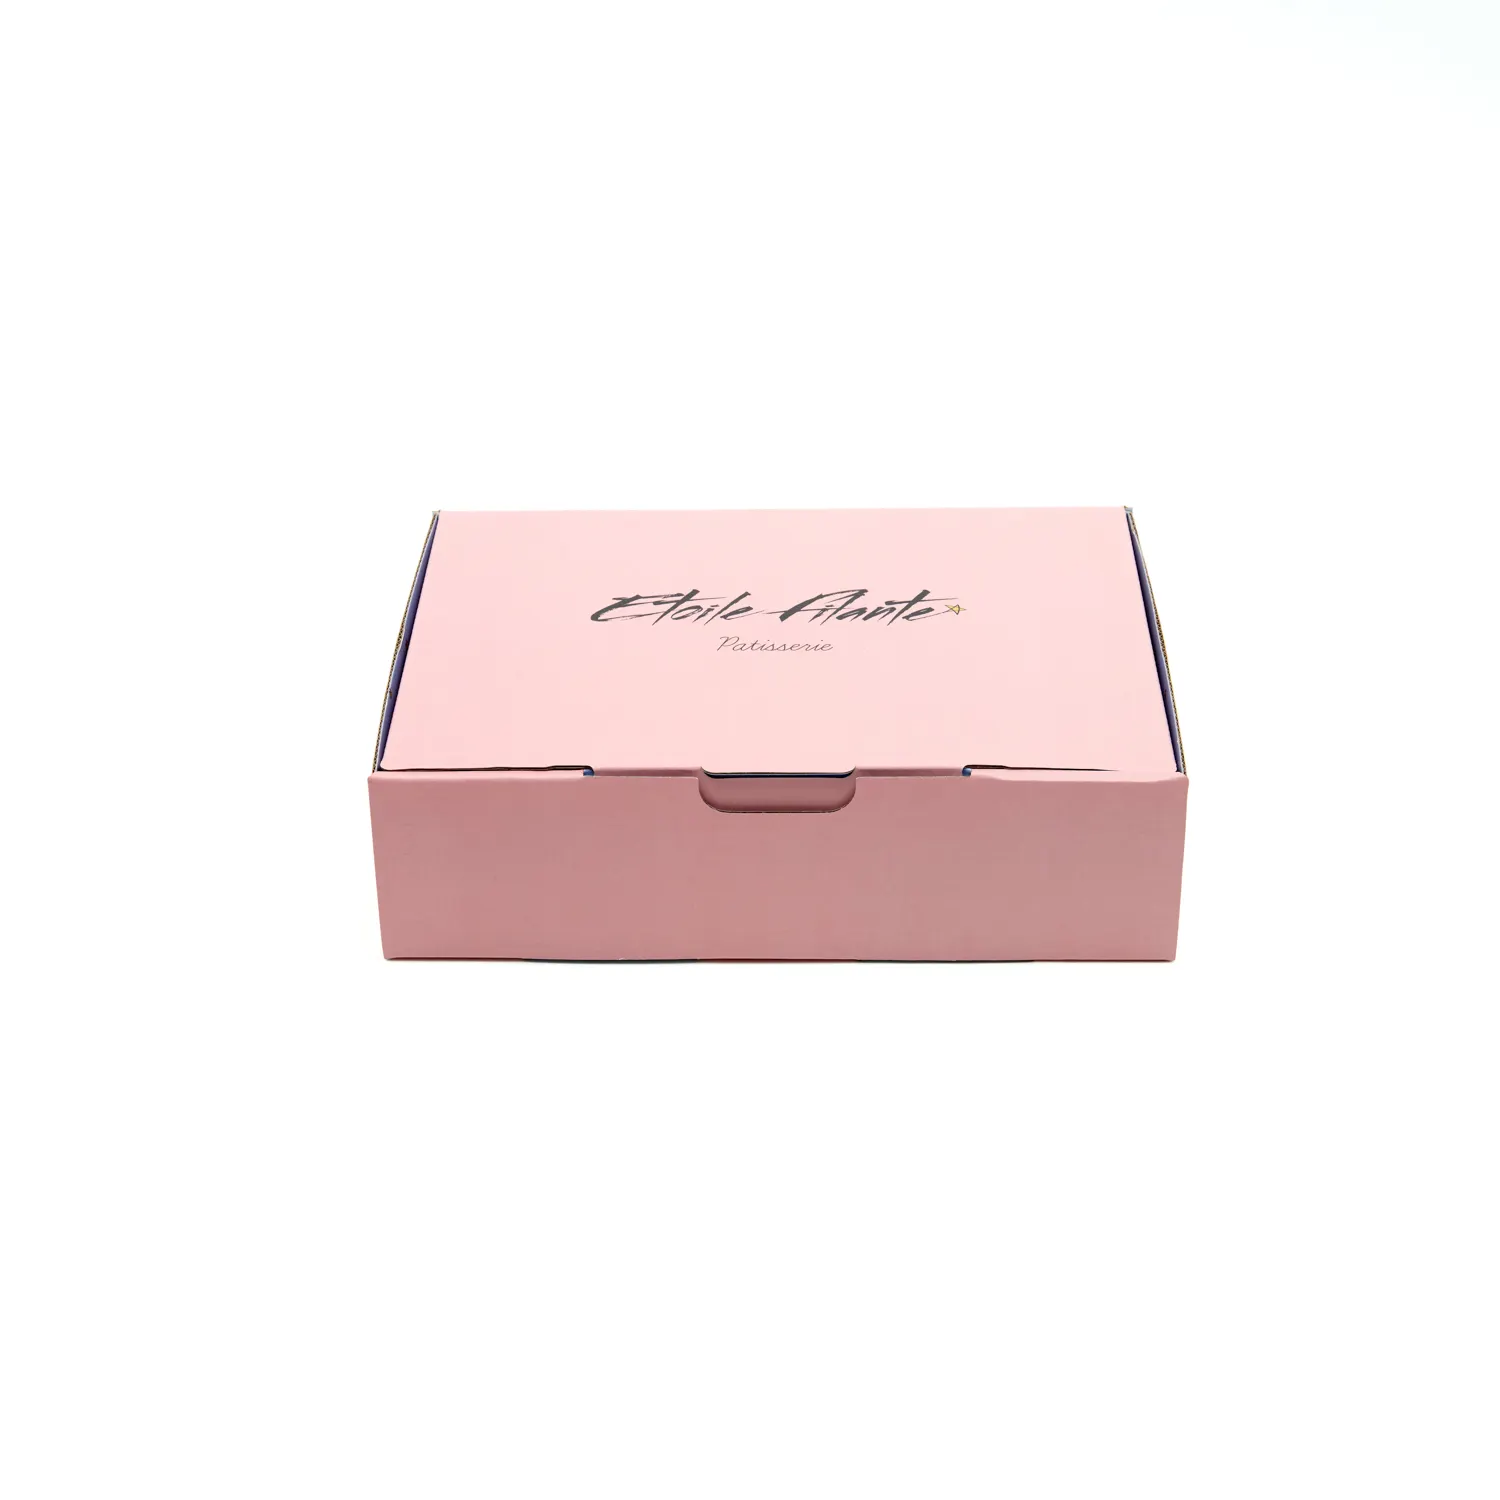 Logotipo personalizado de luxo de alta qualidade, baixa cor rosa enrolado fecho caixa de envio